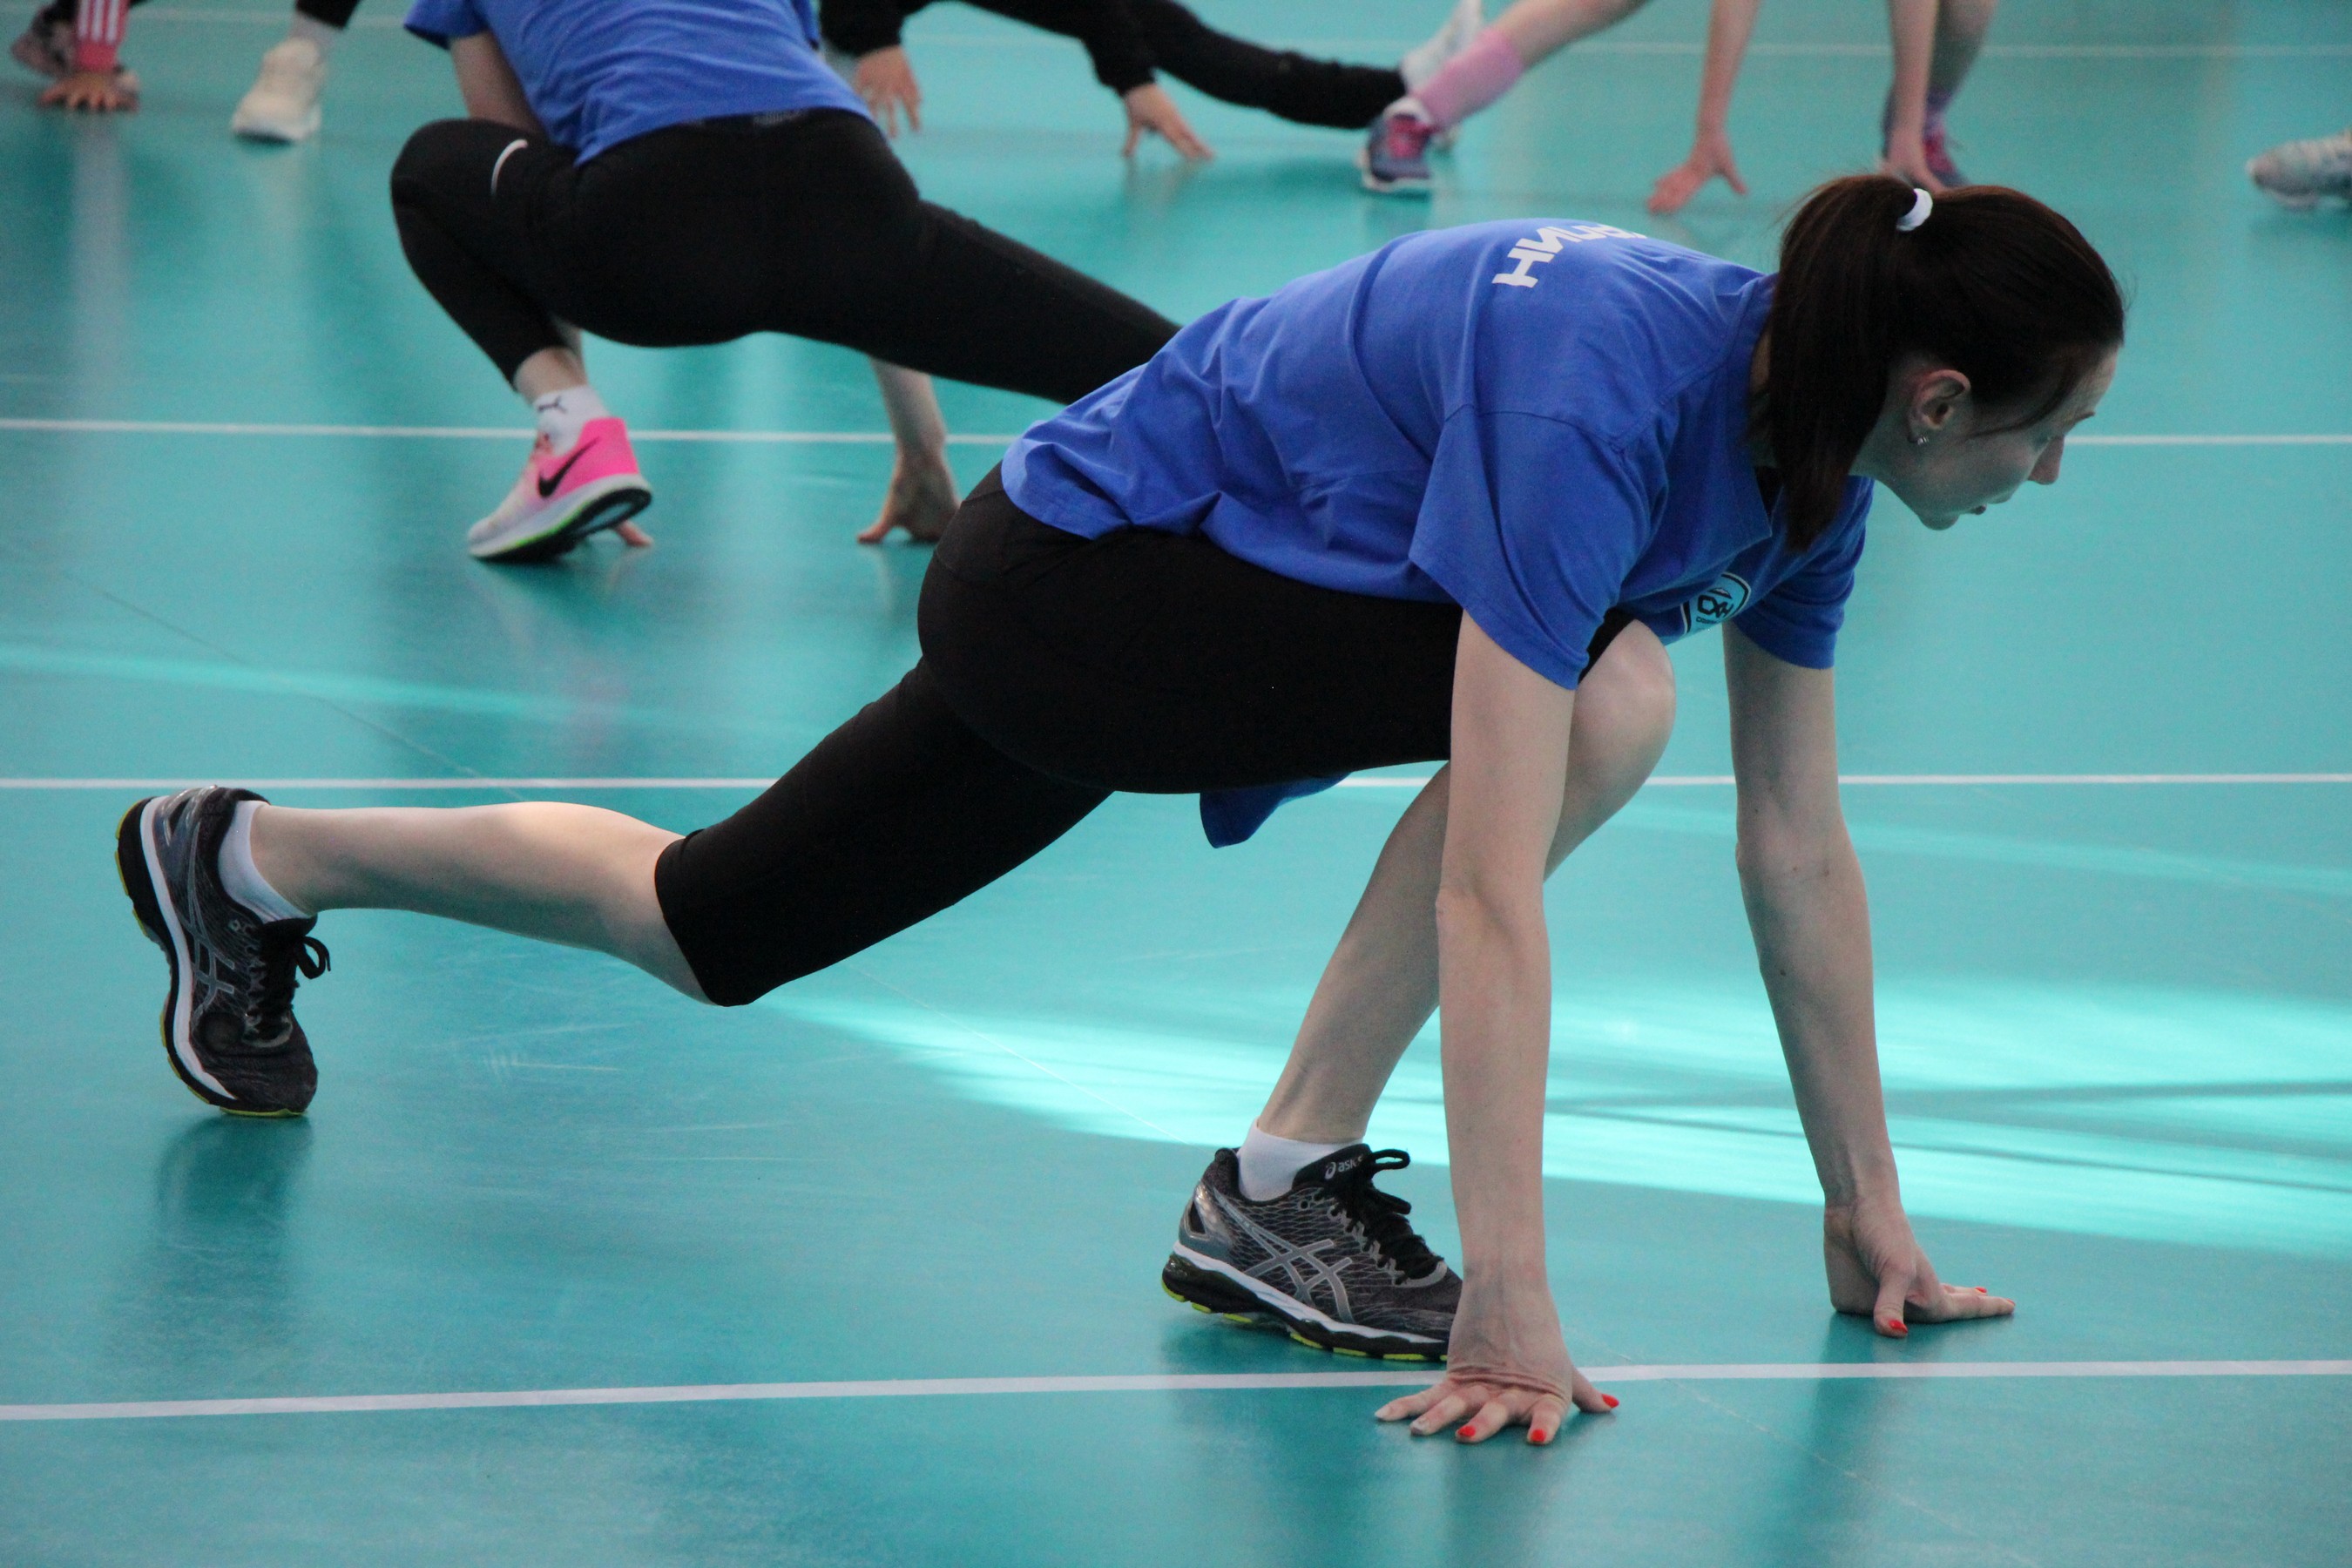 Мастер-класс ПСК "Сахалин" для юных волейболистов